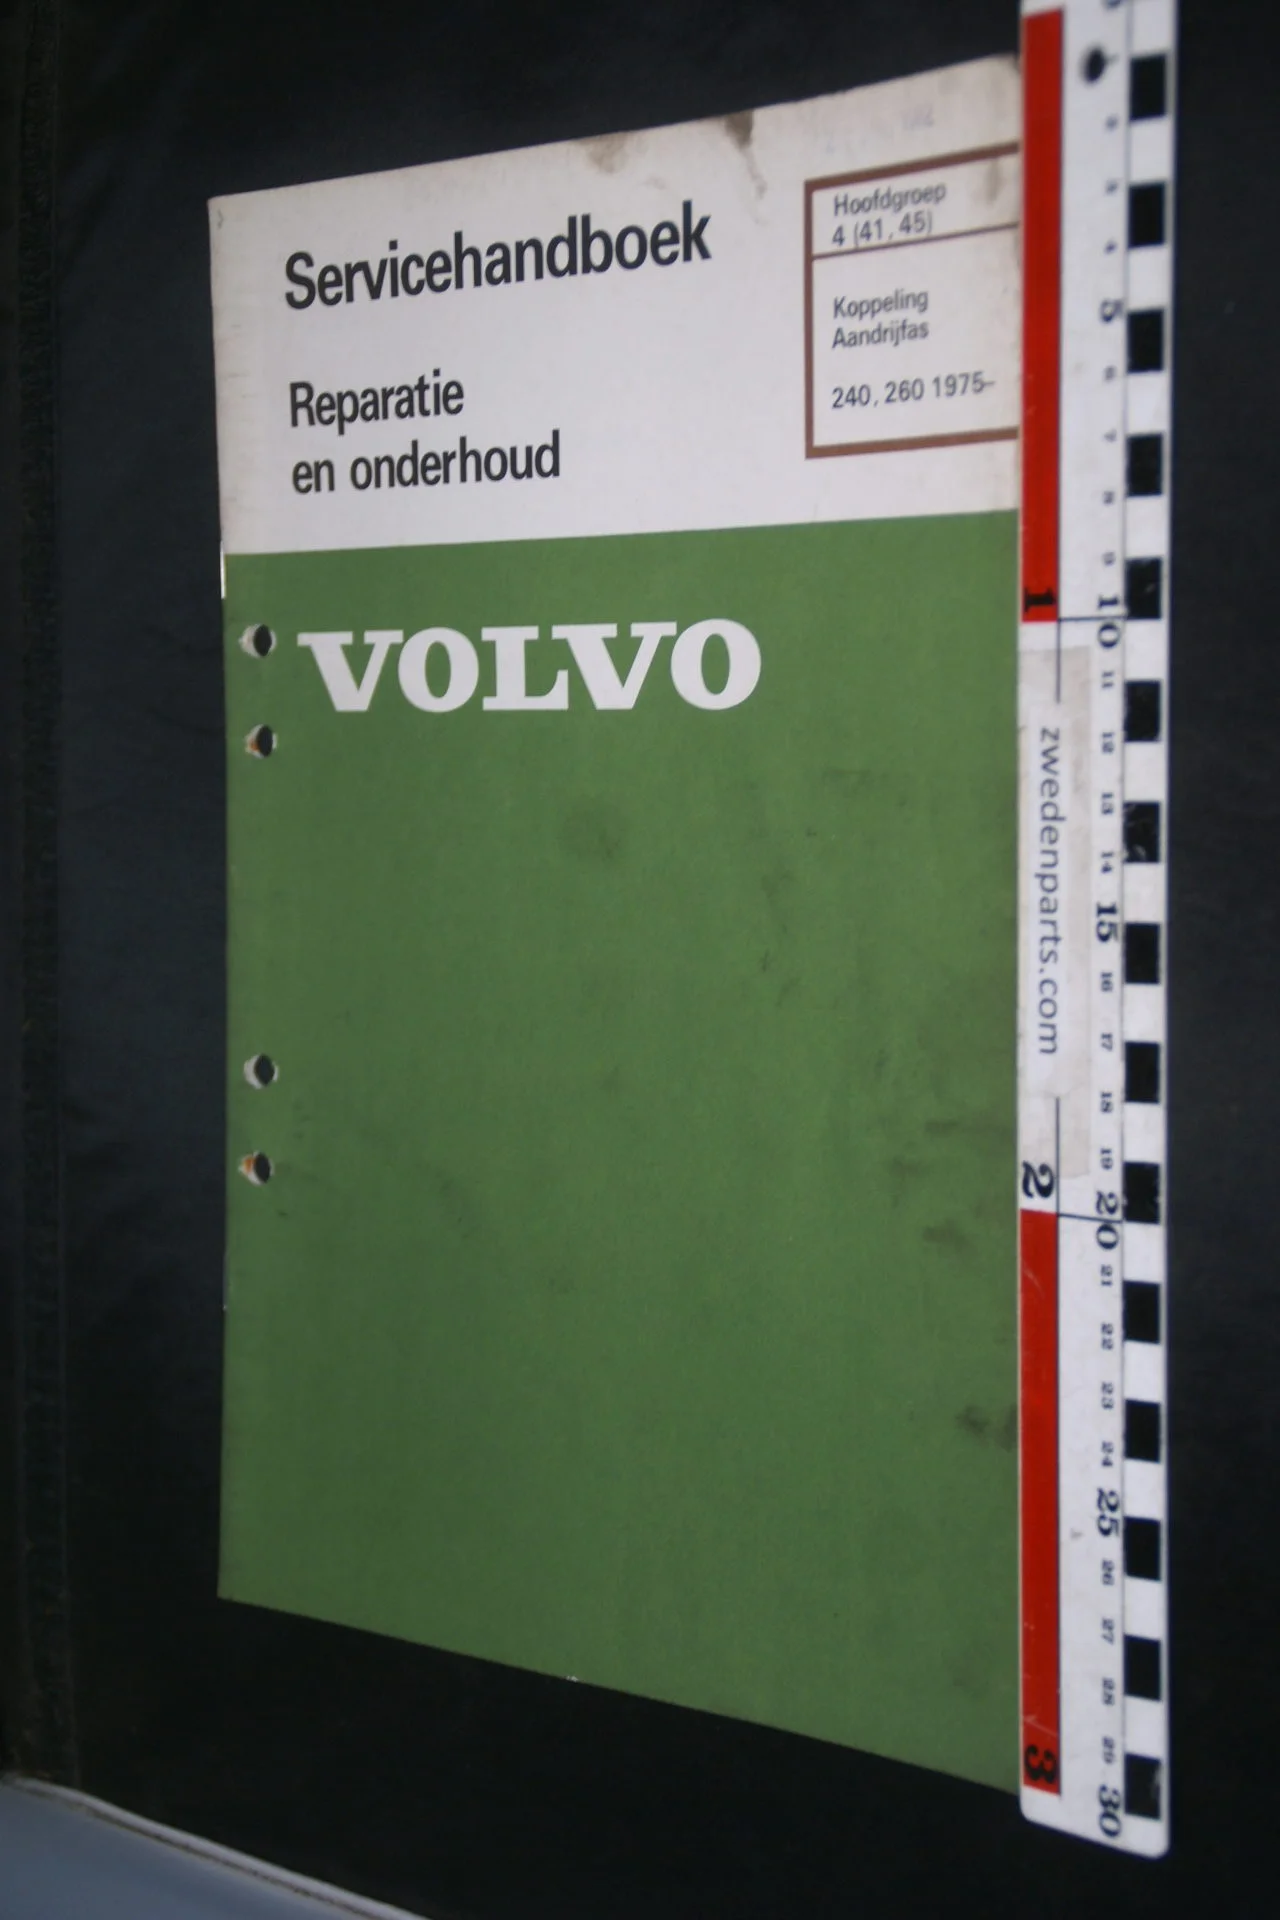 DSC08441 1982 origineel Volvo 240, 260 servicehandboek  4 (41-45) koppeling, aandrijfas 1 van 800 TP 30444-1